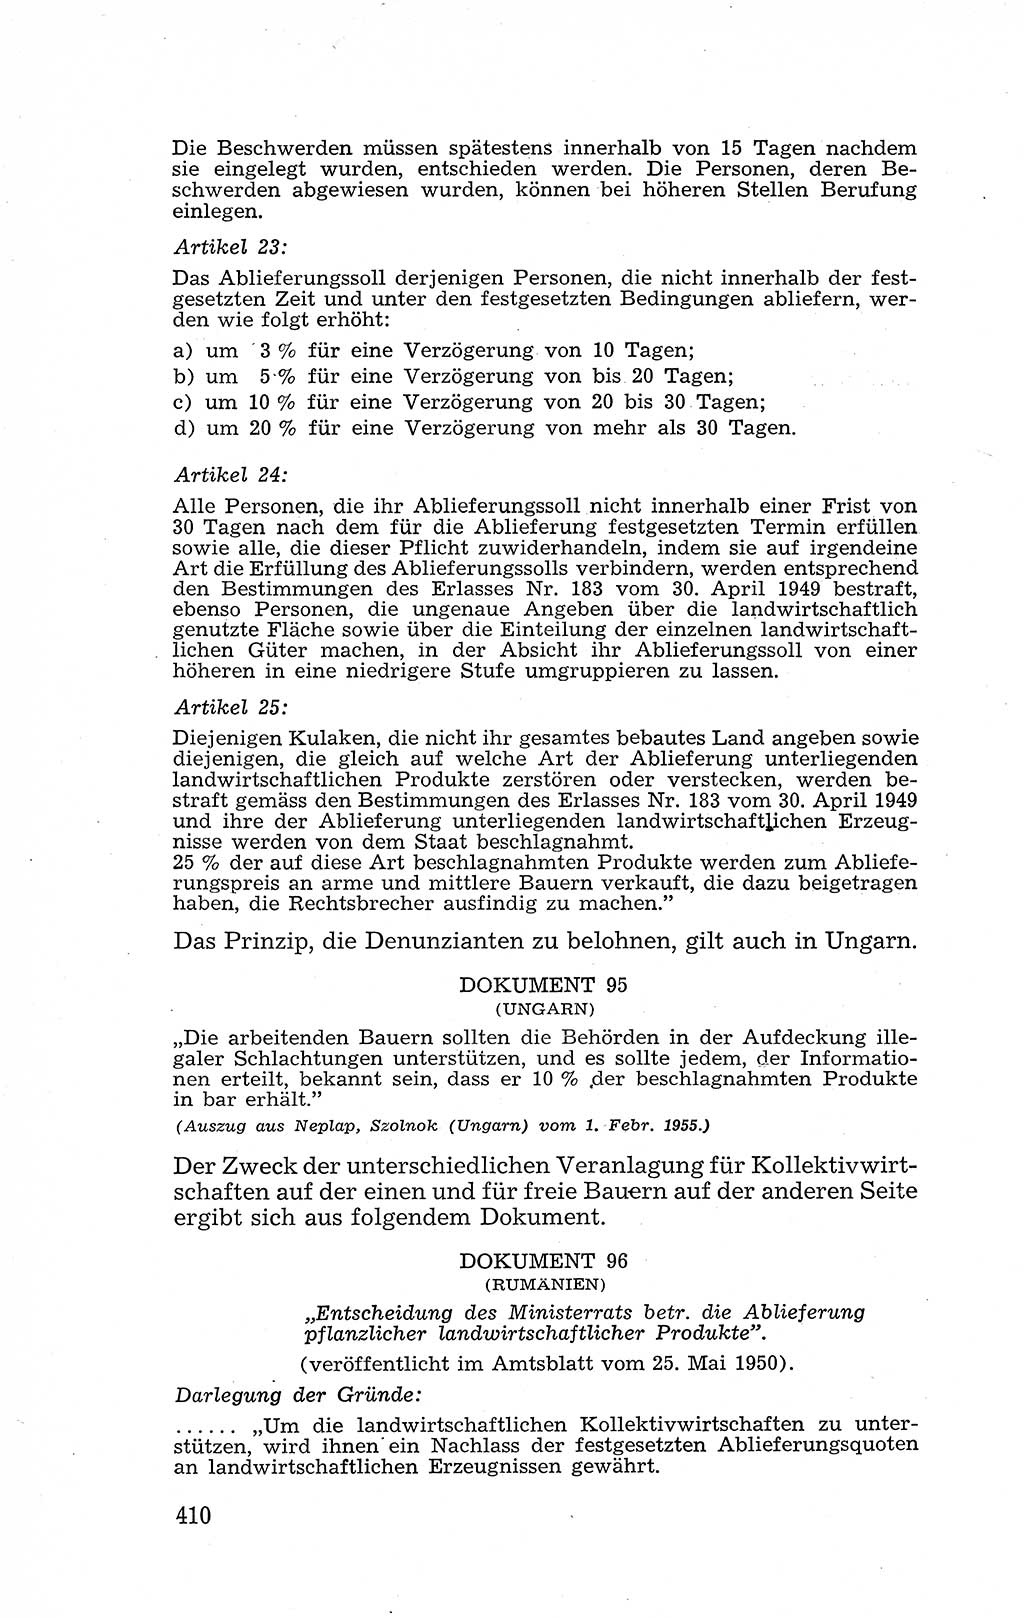 Recht in Fesseln, Dokumente, Internationale Juristen-Kommission [Bundesrepublik Deutschland (BRD)] 1955, Seite 410 (R. Dok. IJK BRD 1955, S. 410)